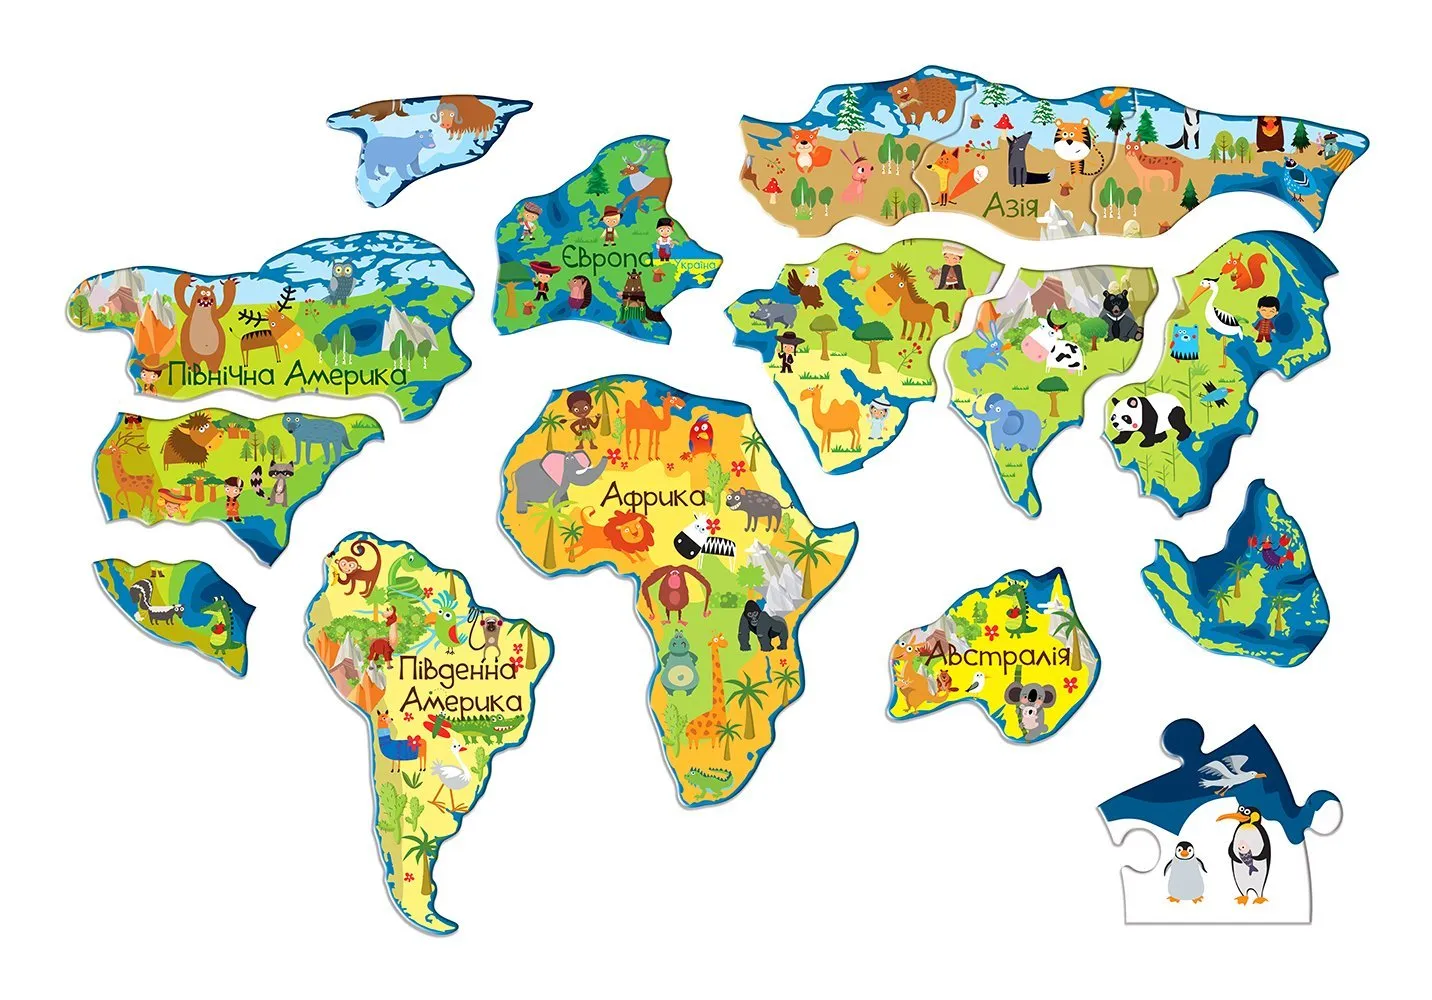 Континенты для дошкольников. Материки для дошкольников. Изображения материков для детей. Материки земли для дошкольников.